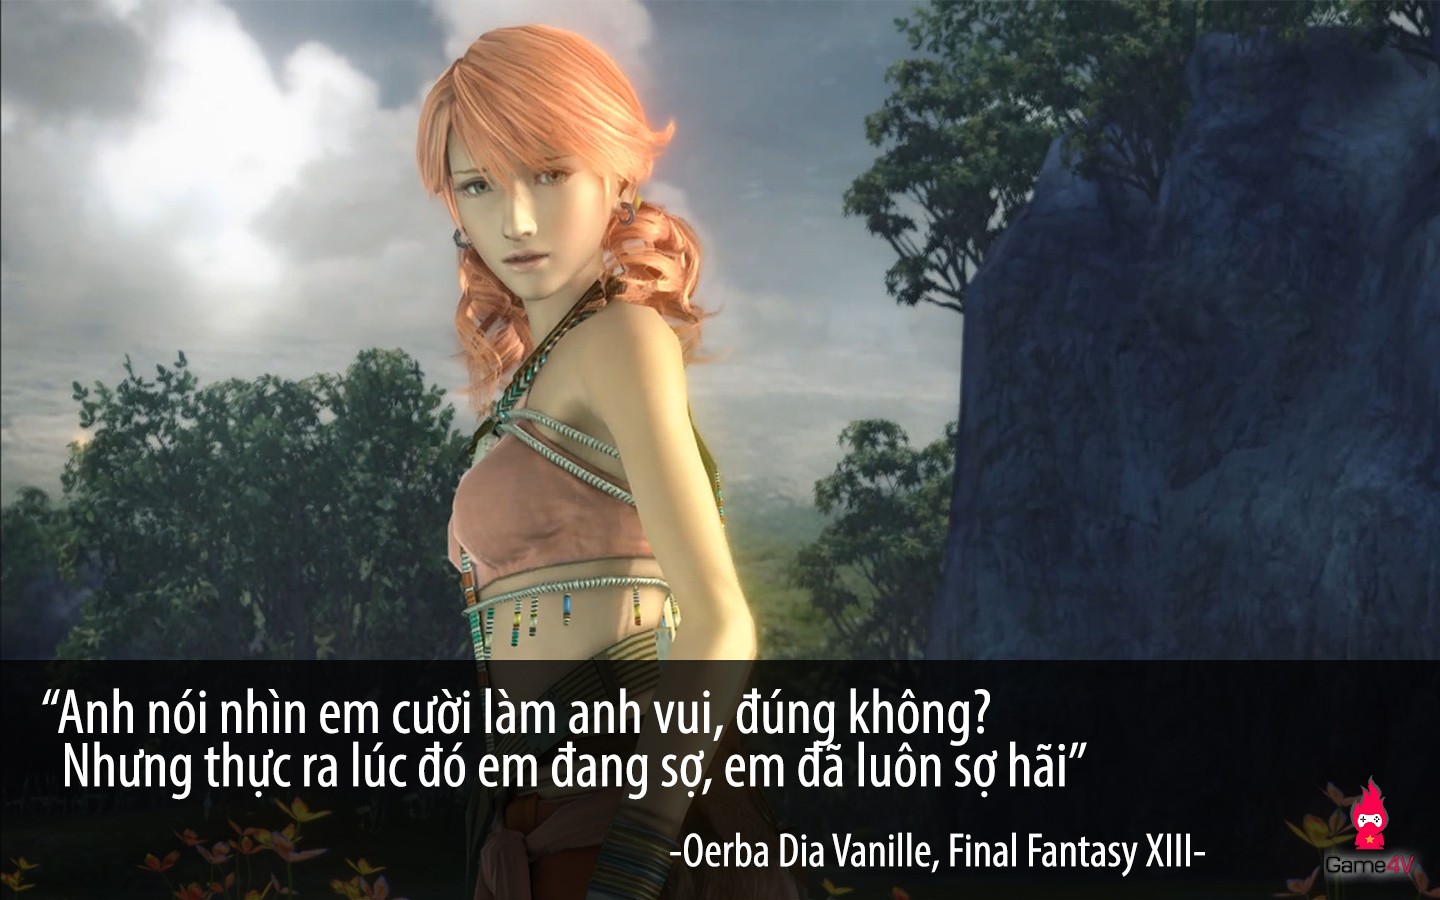 [Quotes] Final Fantasy và những câu nói để khắc ghi - Hình 10